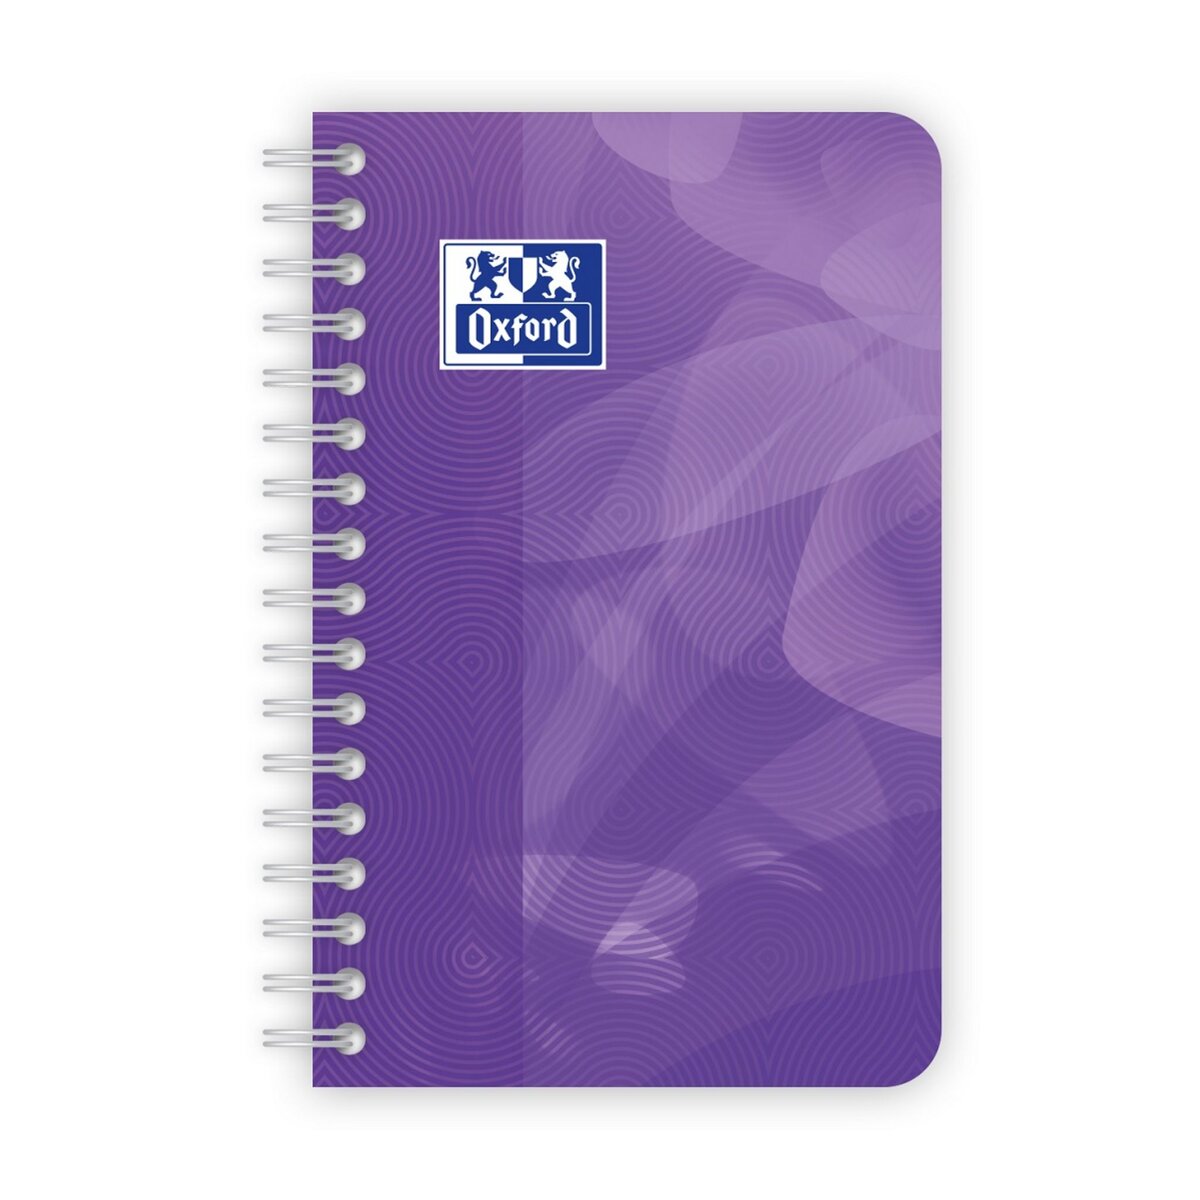 OXFORD carnet petits carreaux 180 pages 9x14 oxford intégrale - violet